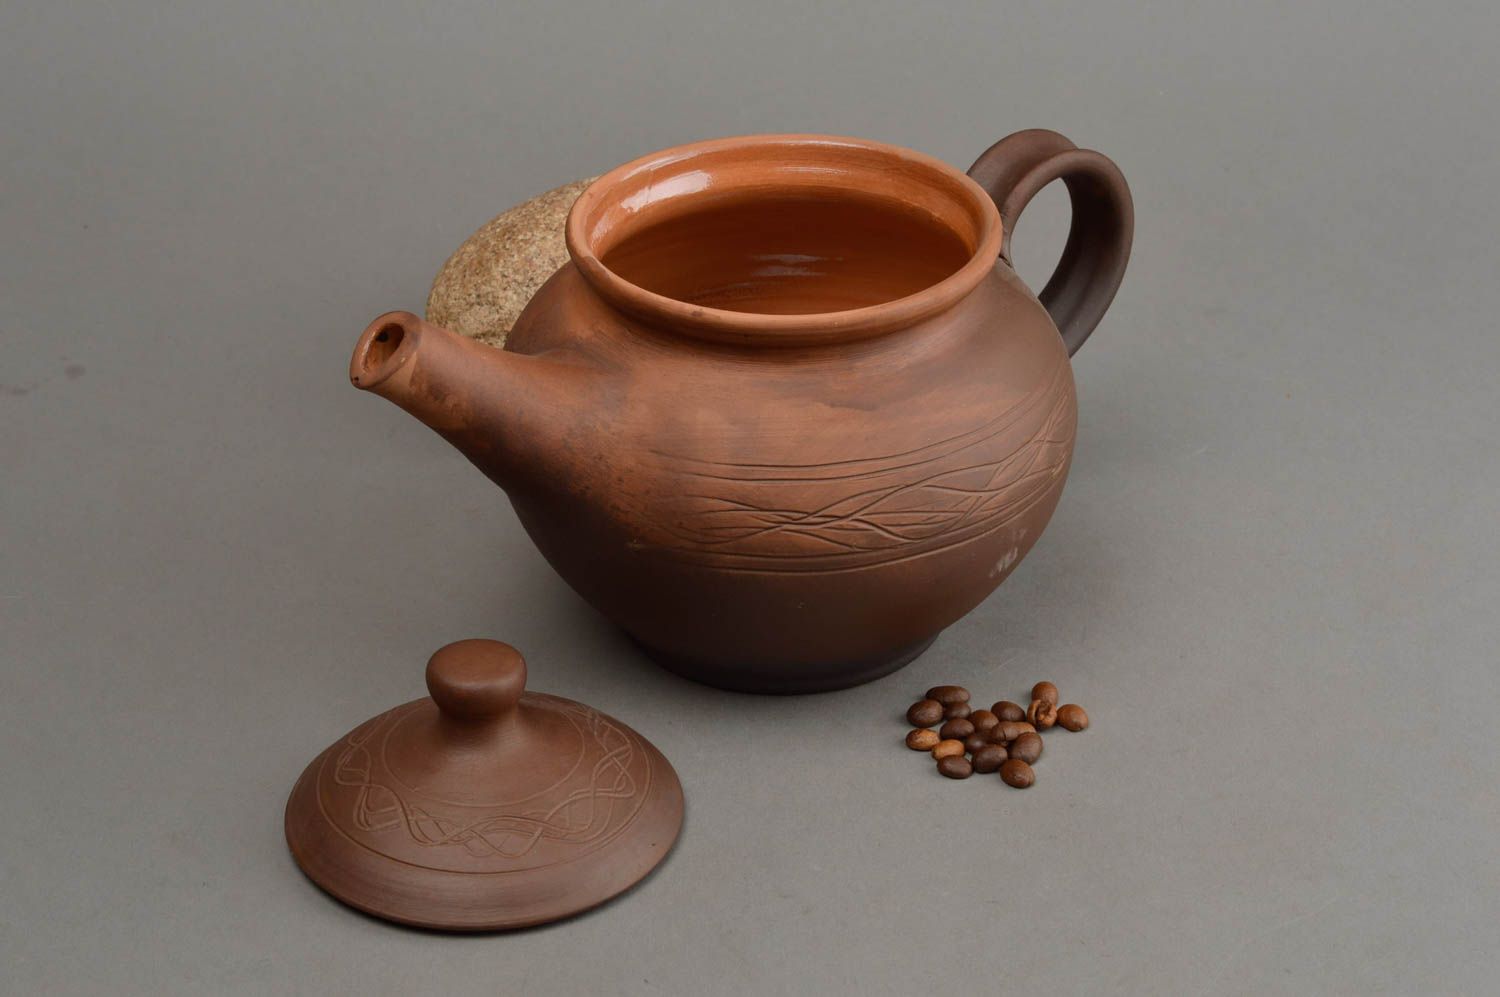 Керамический заварочный чайник с крышкой из красной глины эко посуда хендмейд фото 1